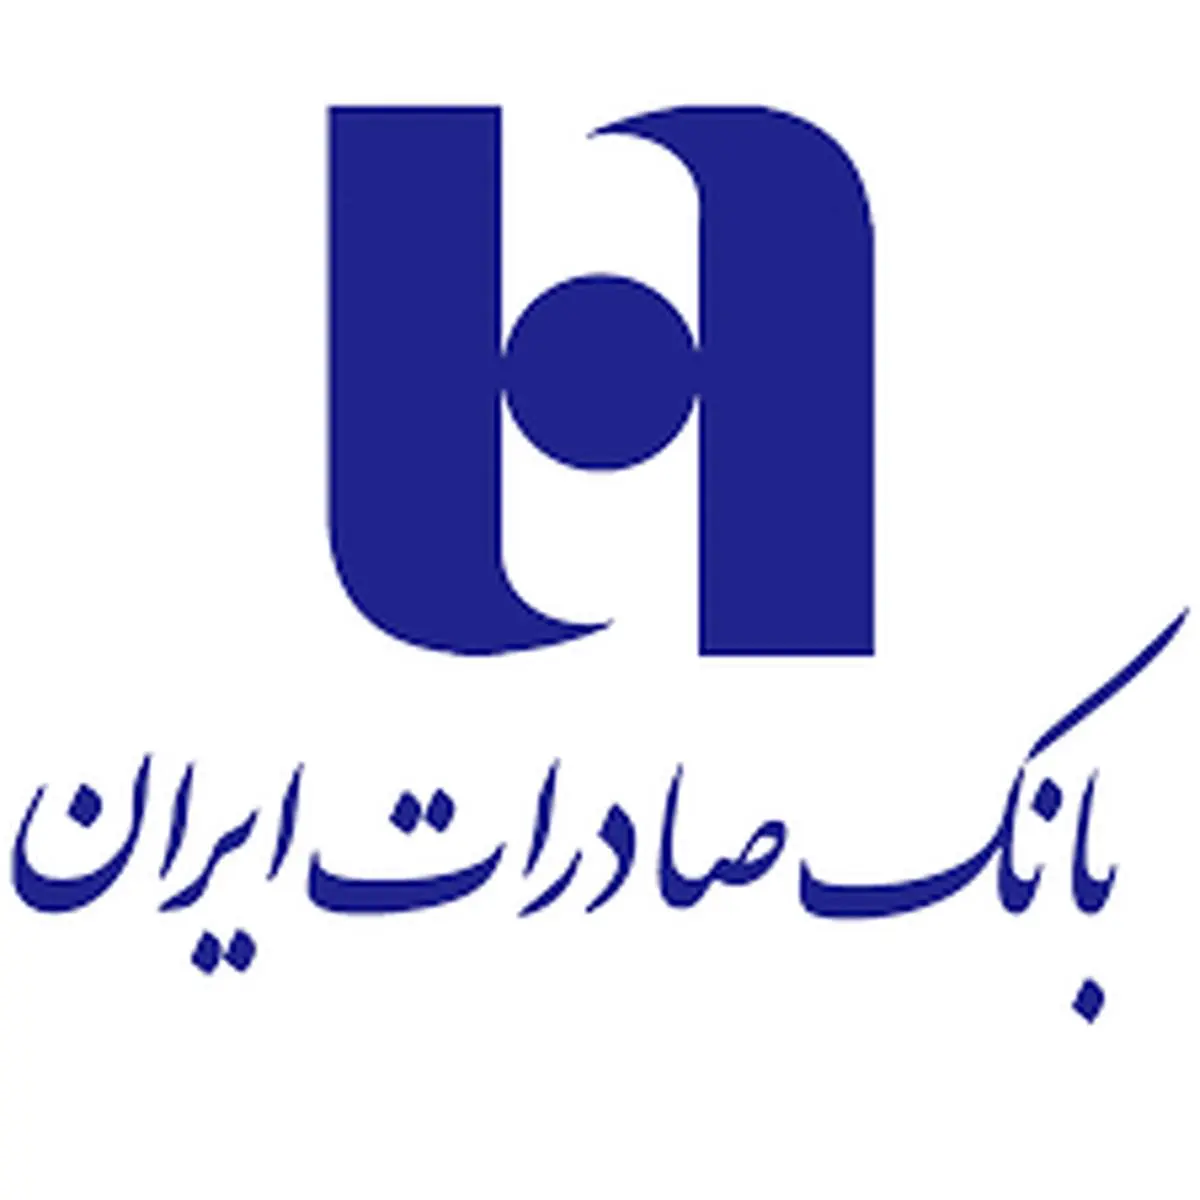 الگوی جدید بانک صادرات ایران در ١٤٠١

